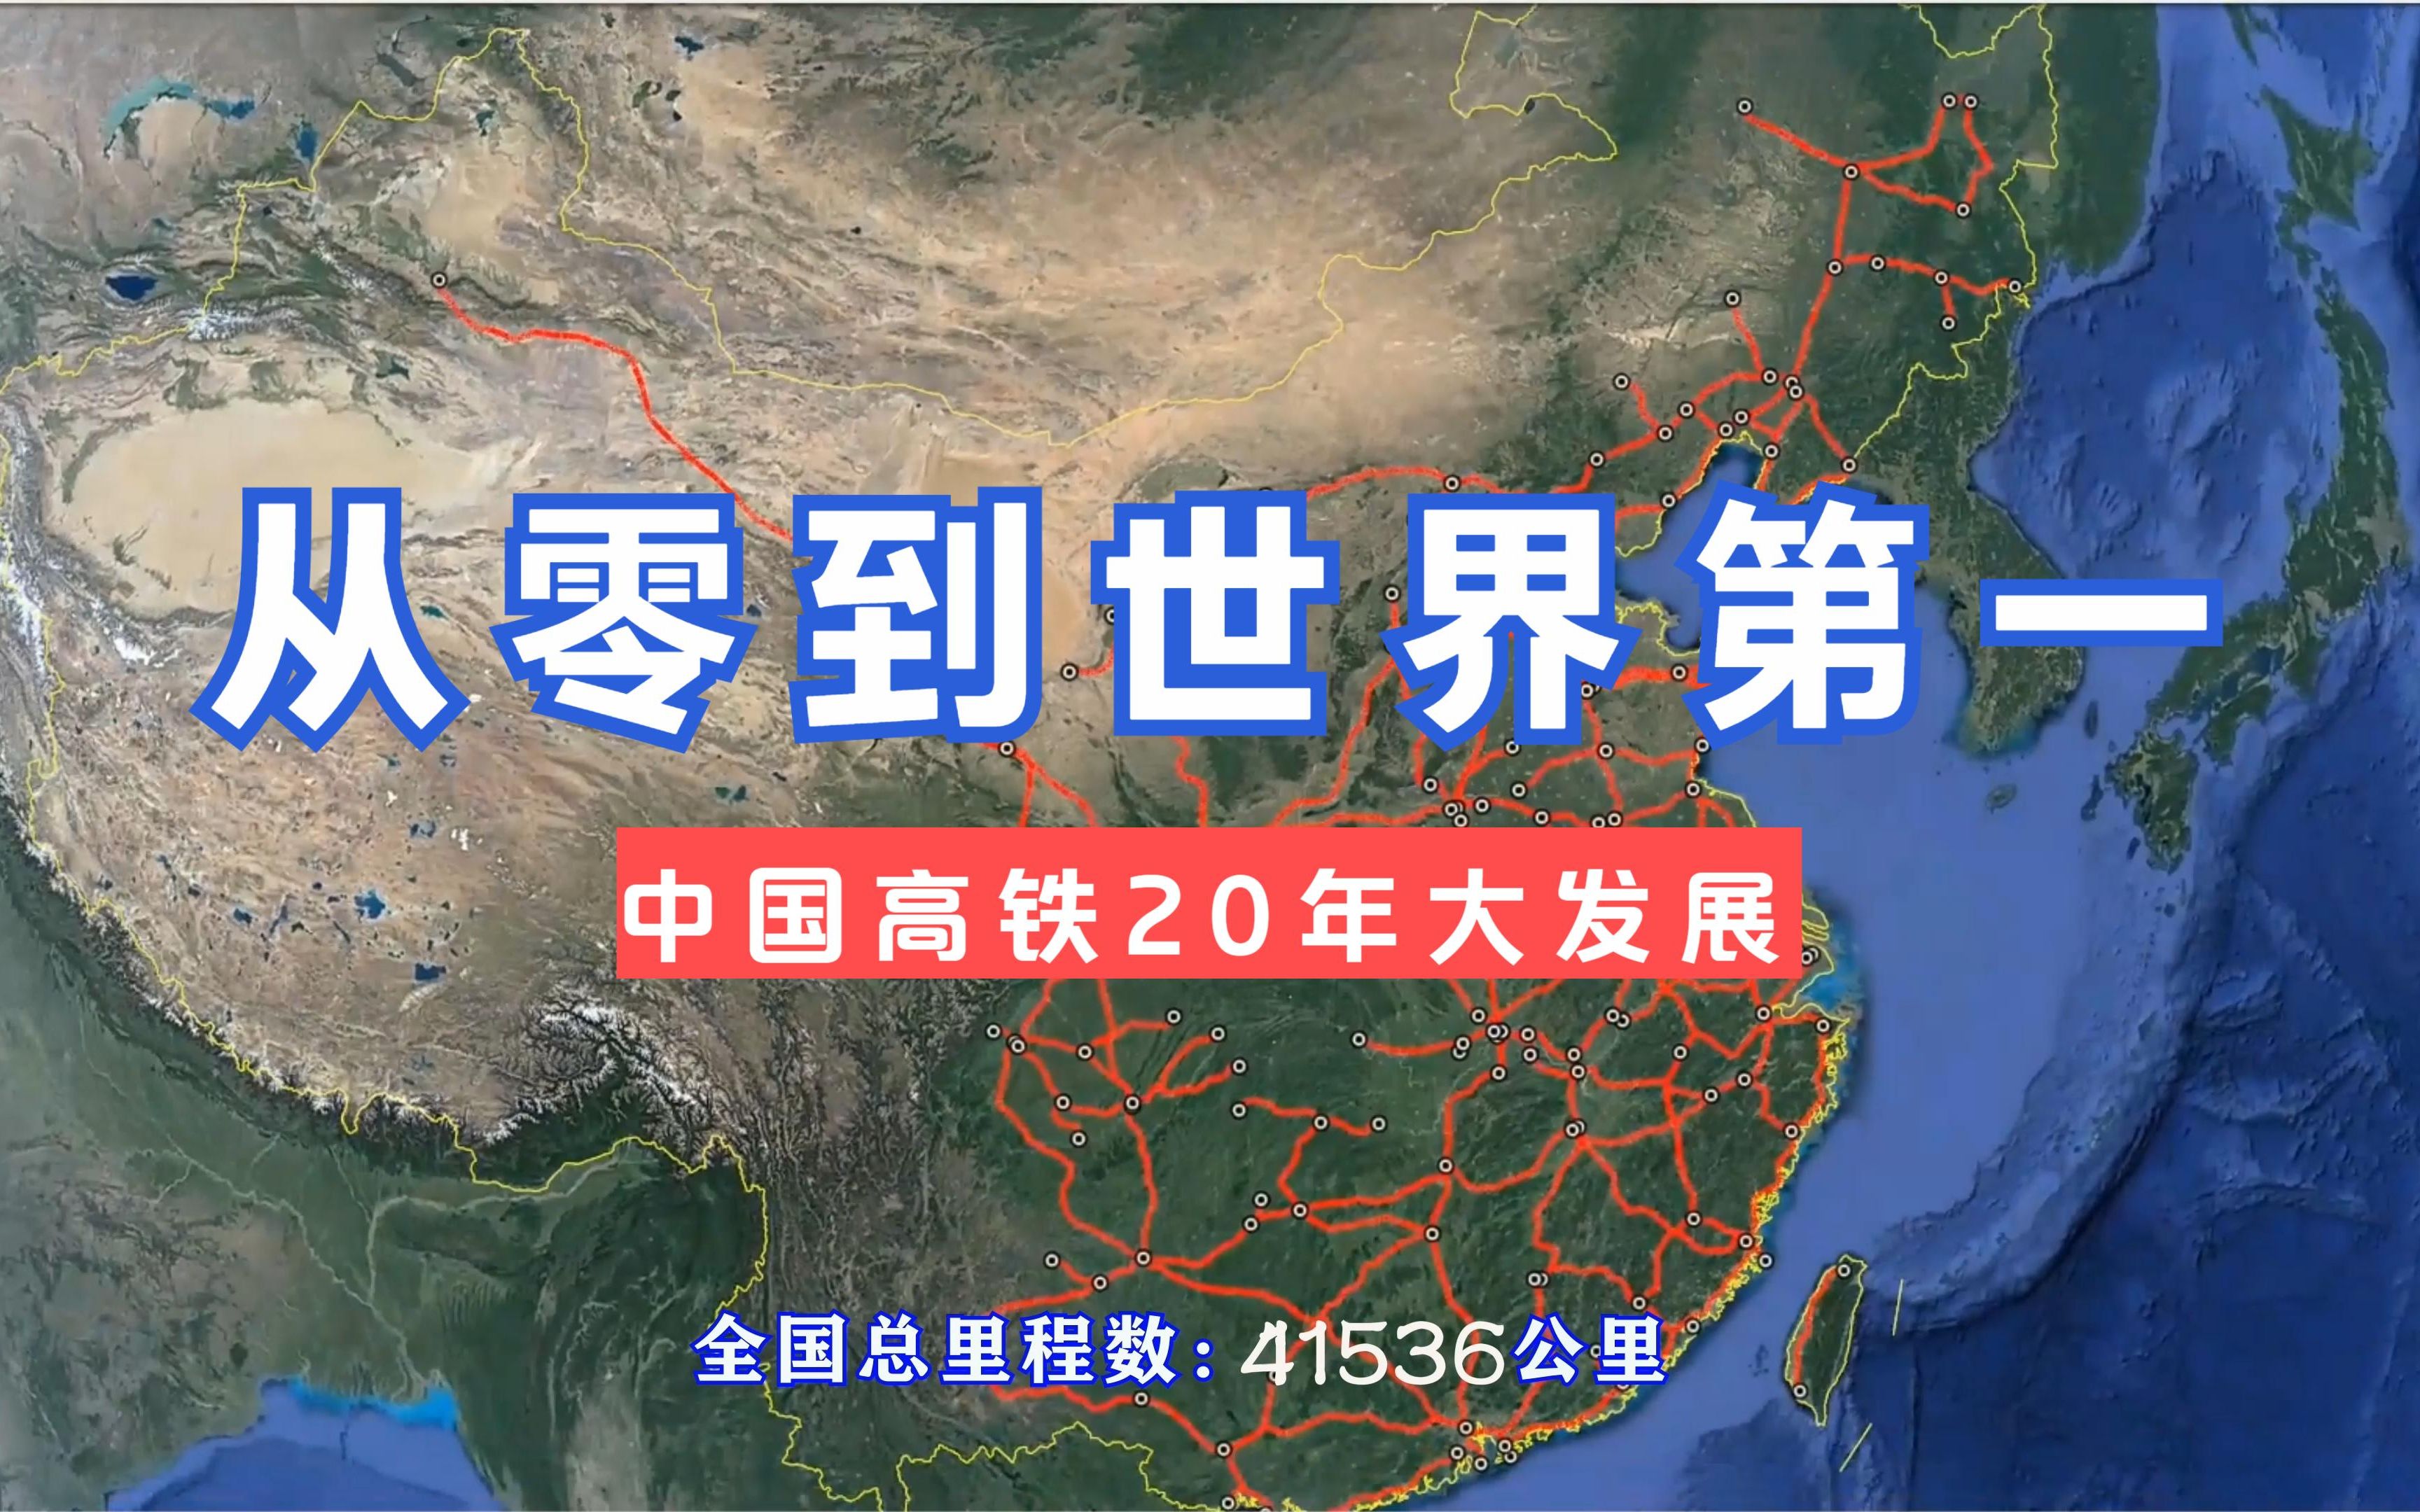 20年见证中国高铁发展,从零到世界第一